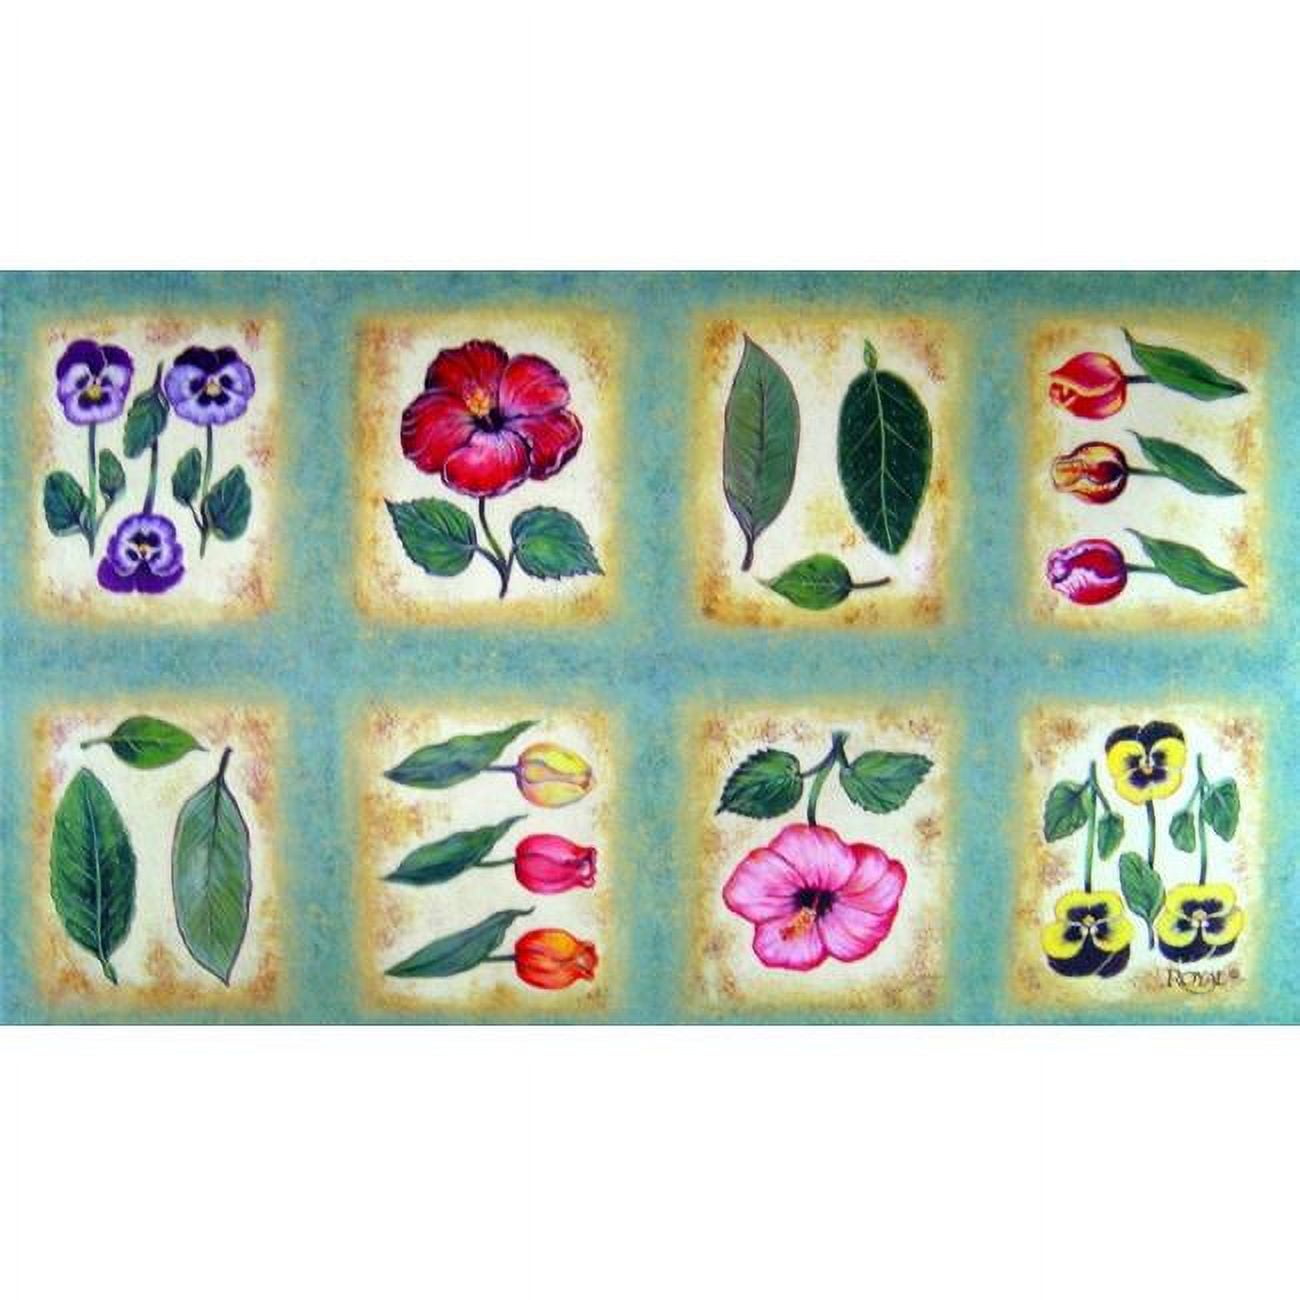 Cpr005 Botanica Flower Tiles Doormat Rug, Green - 18 X 30 In.